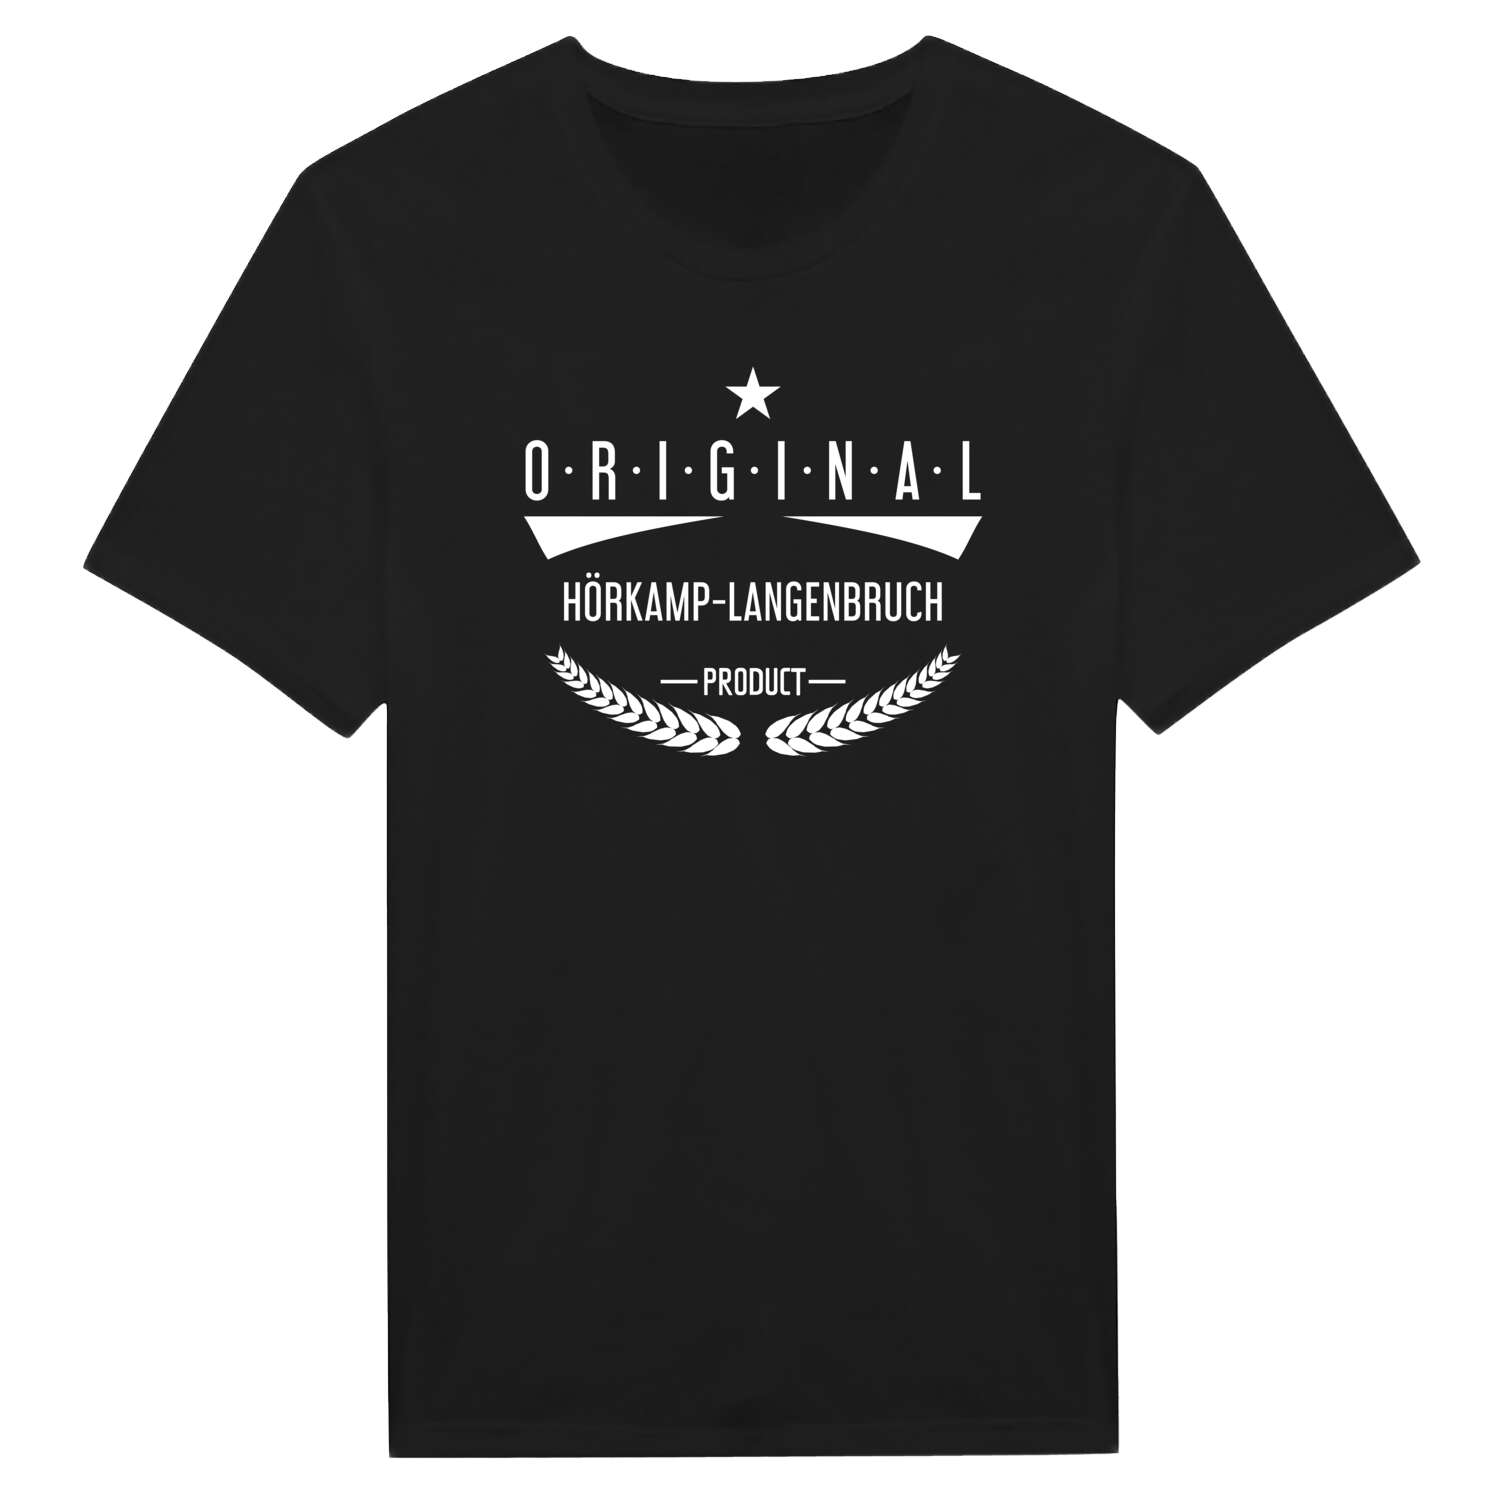 Hörkamp-Langenbruch T-Shirt »Original Product«